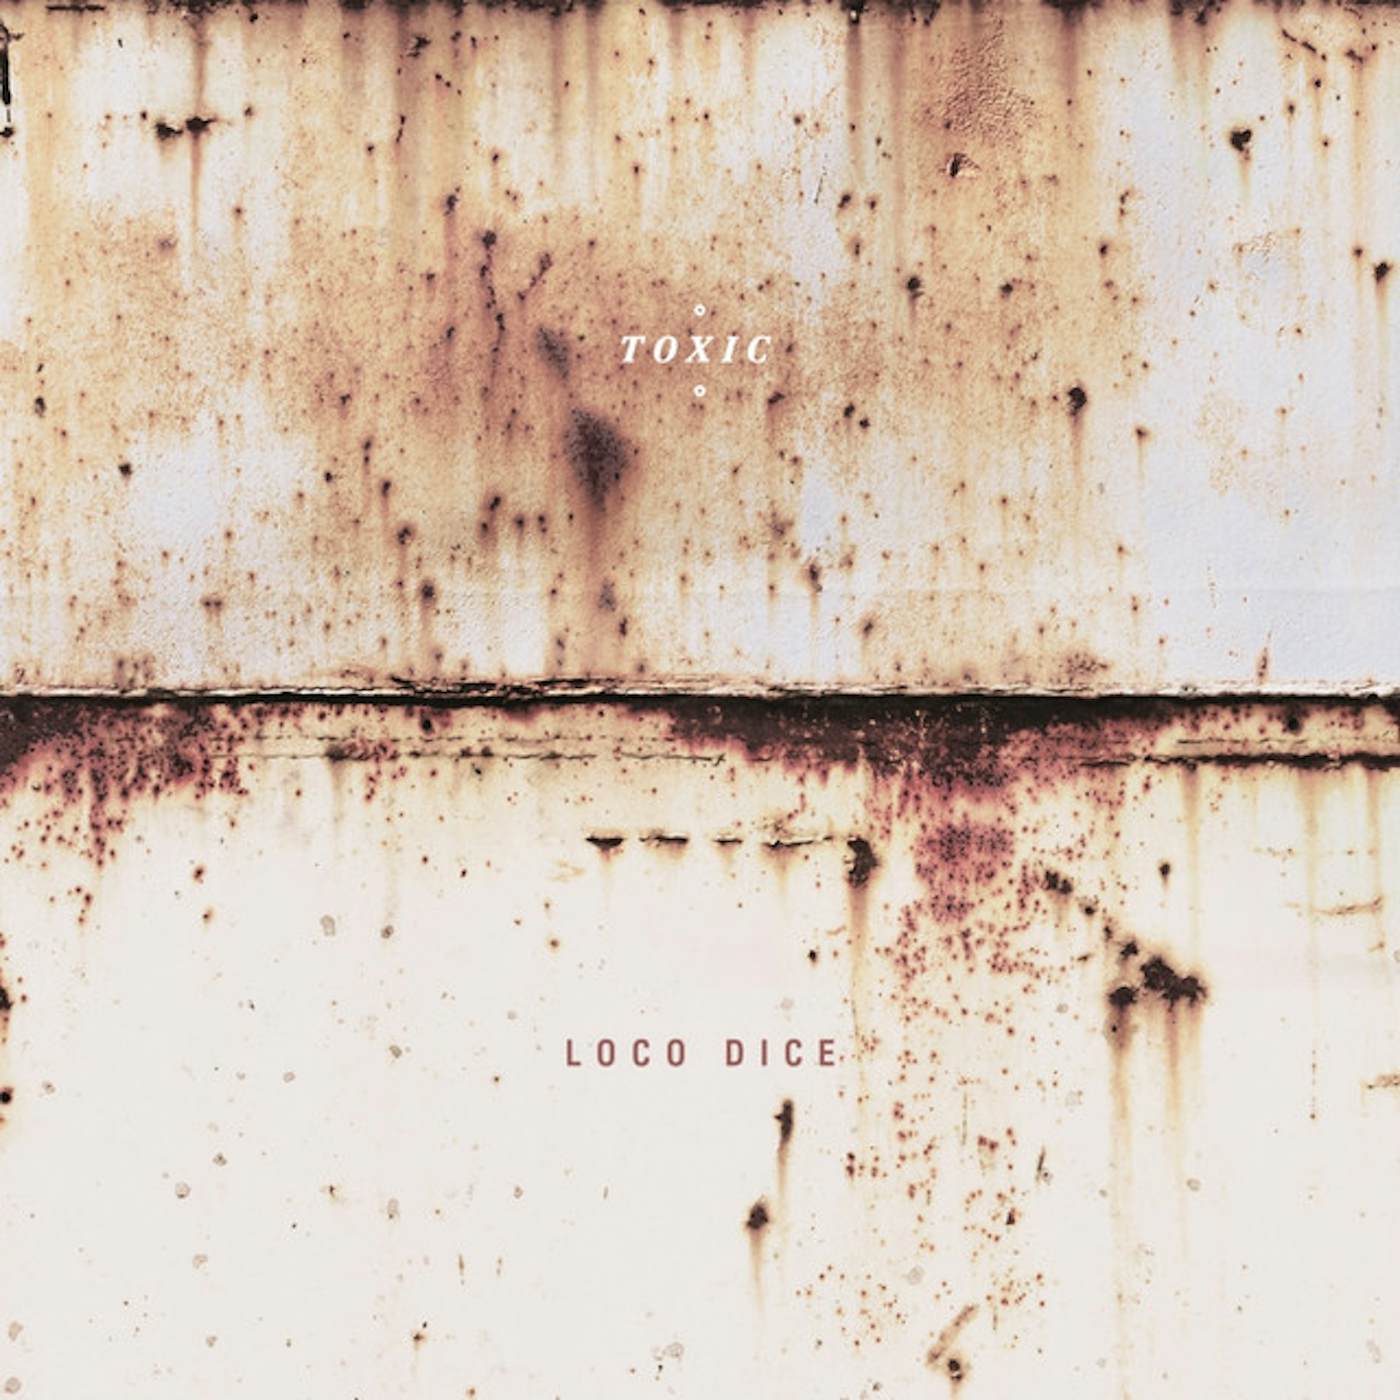 Loco Dice Toxic Vinyl Record